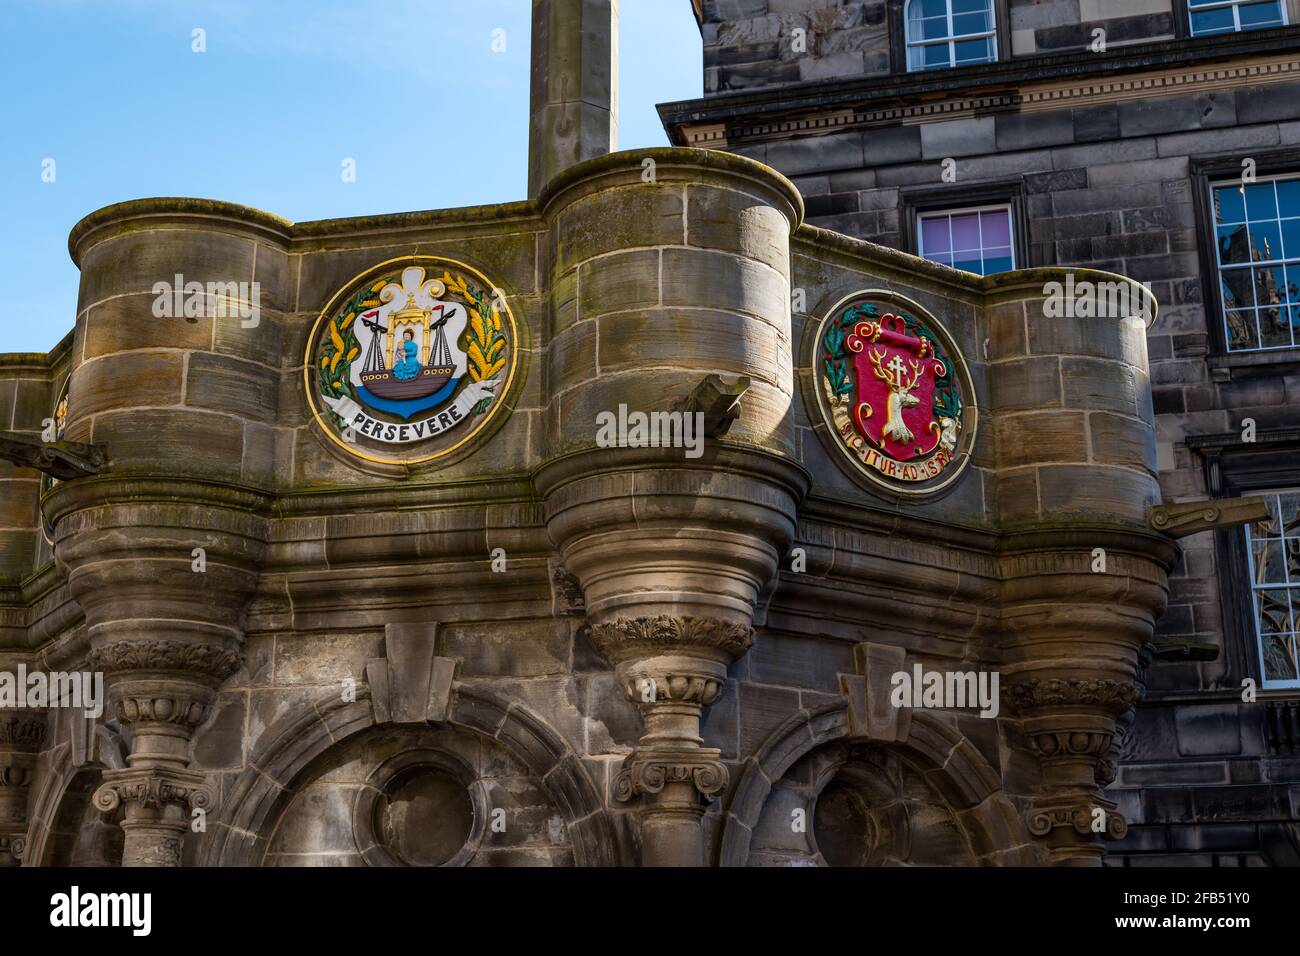 Leith escudo de armas y el lema perseverar recién pintado, Mercat Cross, Royal Mile, Edimburgo, Escocia, REINO UNIDO Foto de stock